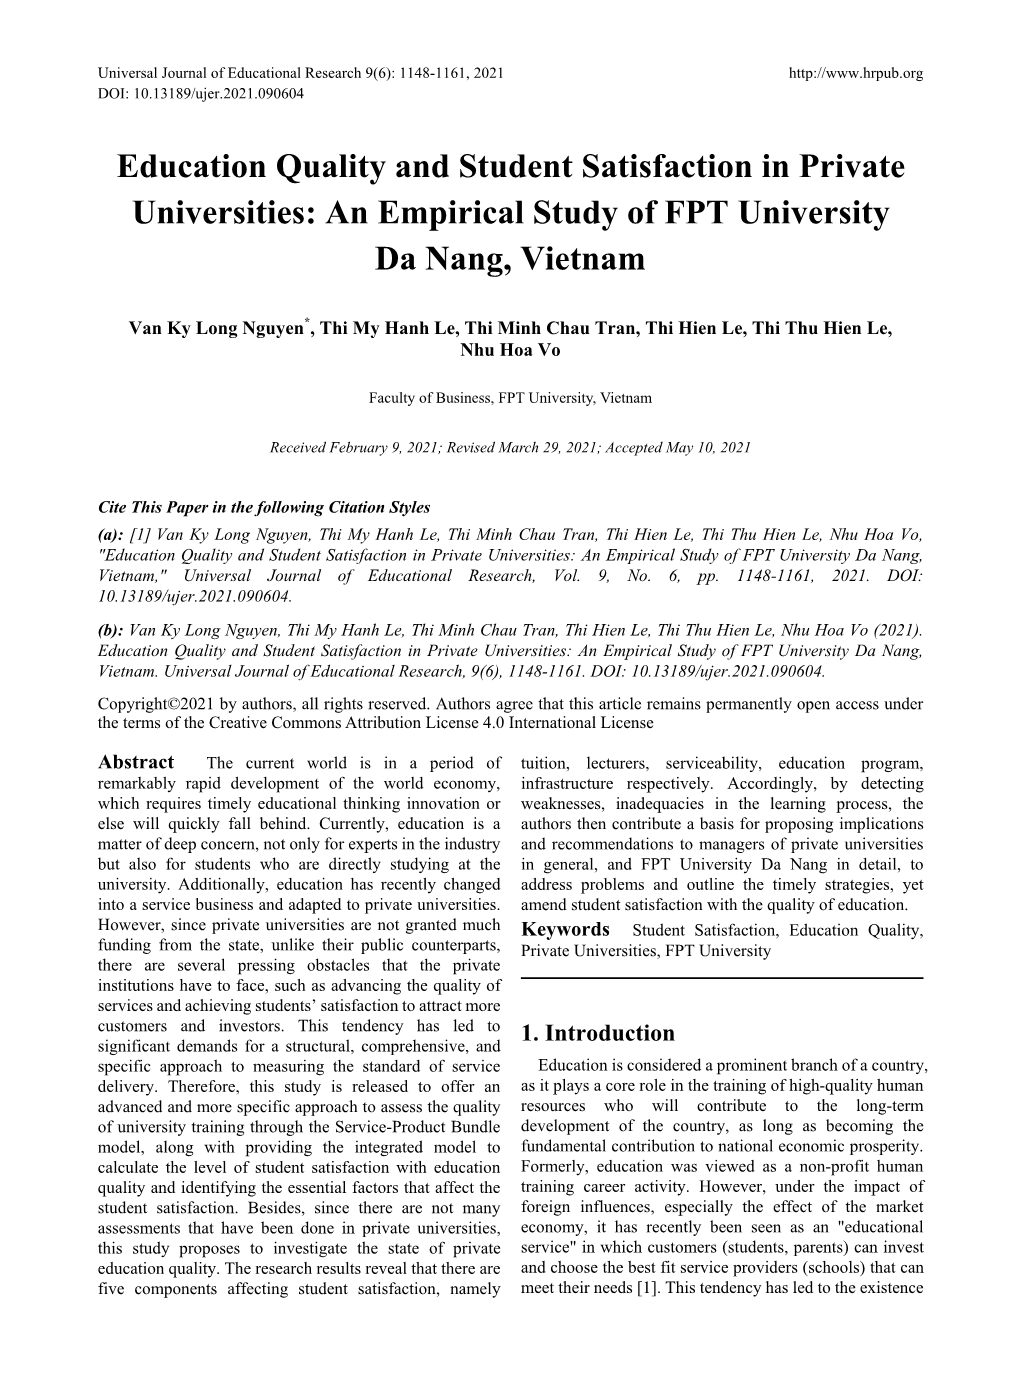 An Empirical Study of FPT University Da Nang, Vietnam